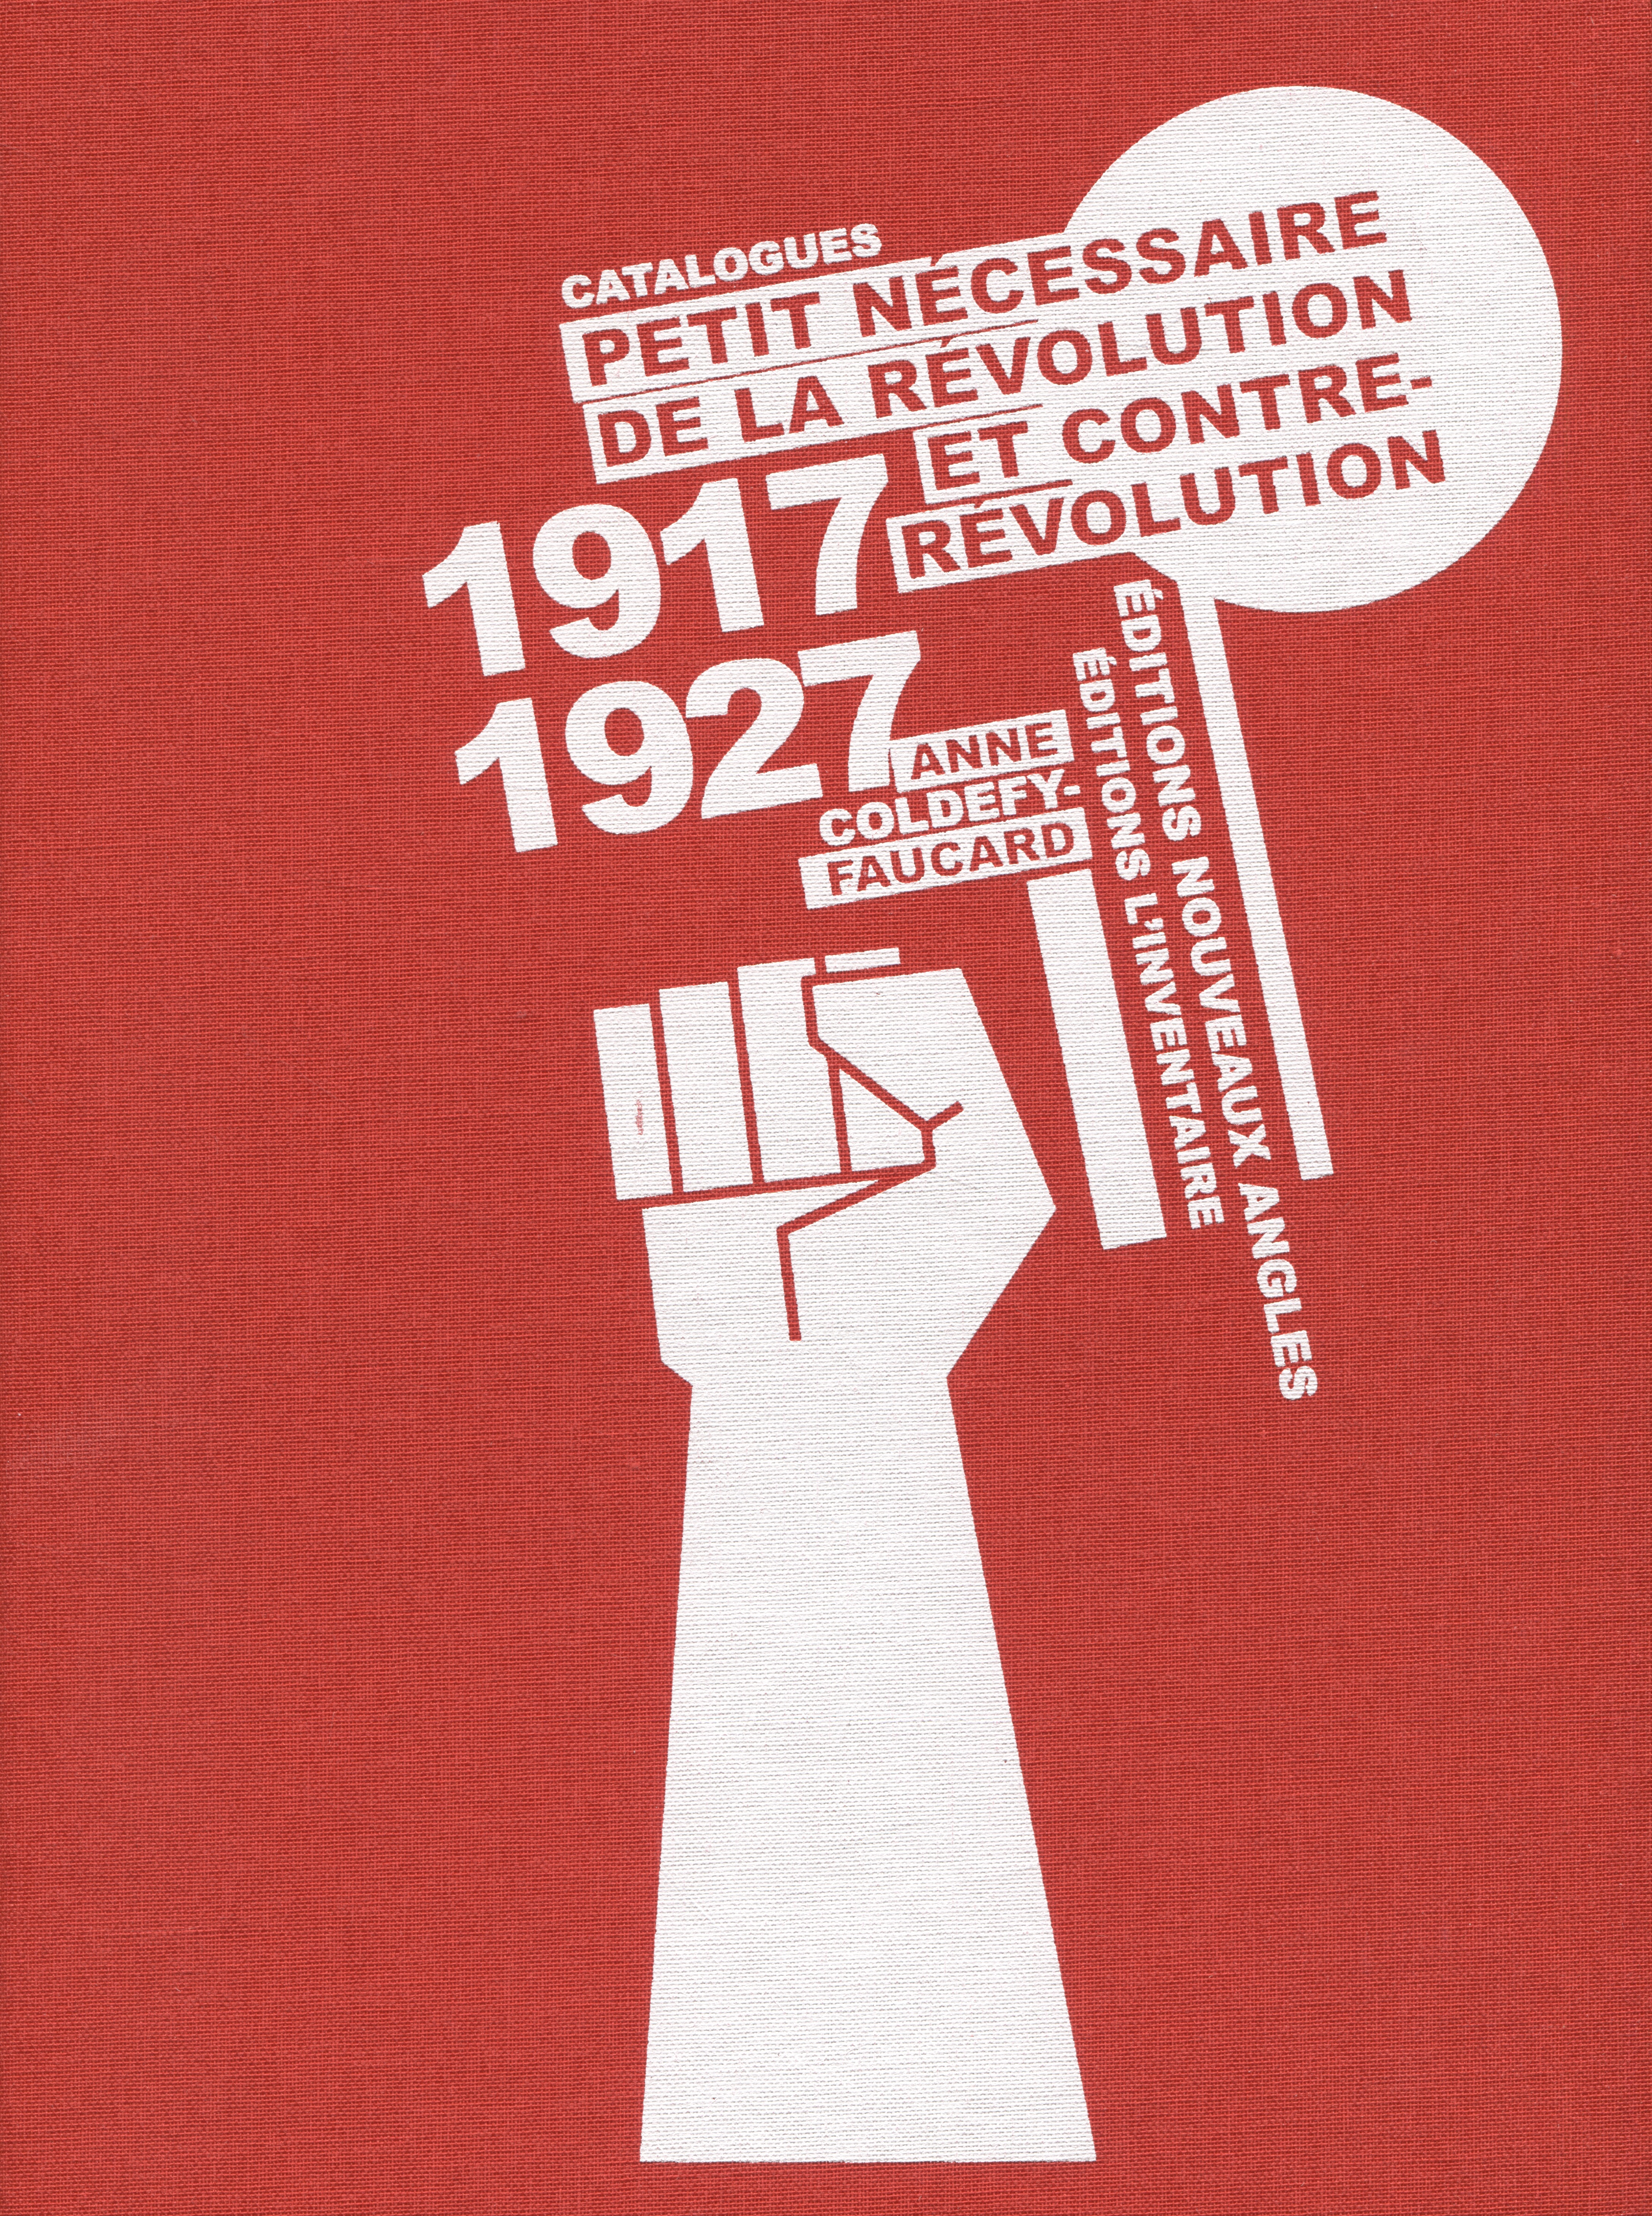 Petit Necessaire de la revolution et contre-revolution (Catalogue 1917   1927)